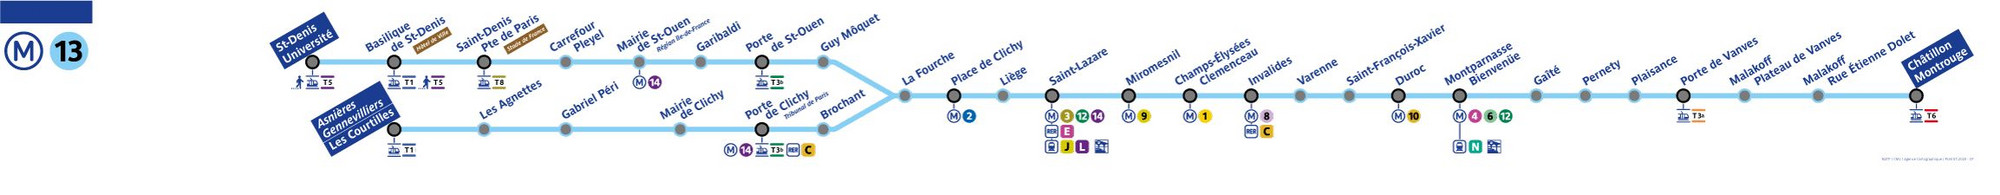 Plan de ligne de métro 13